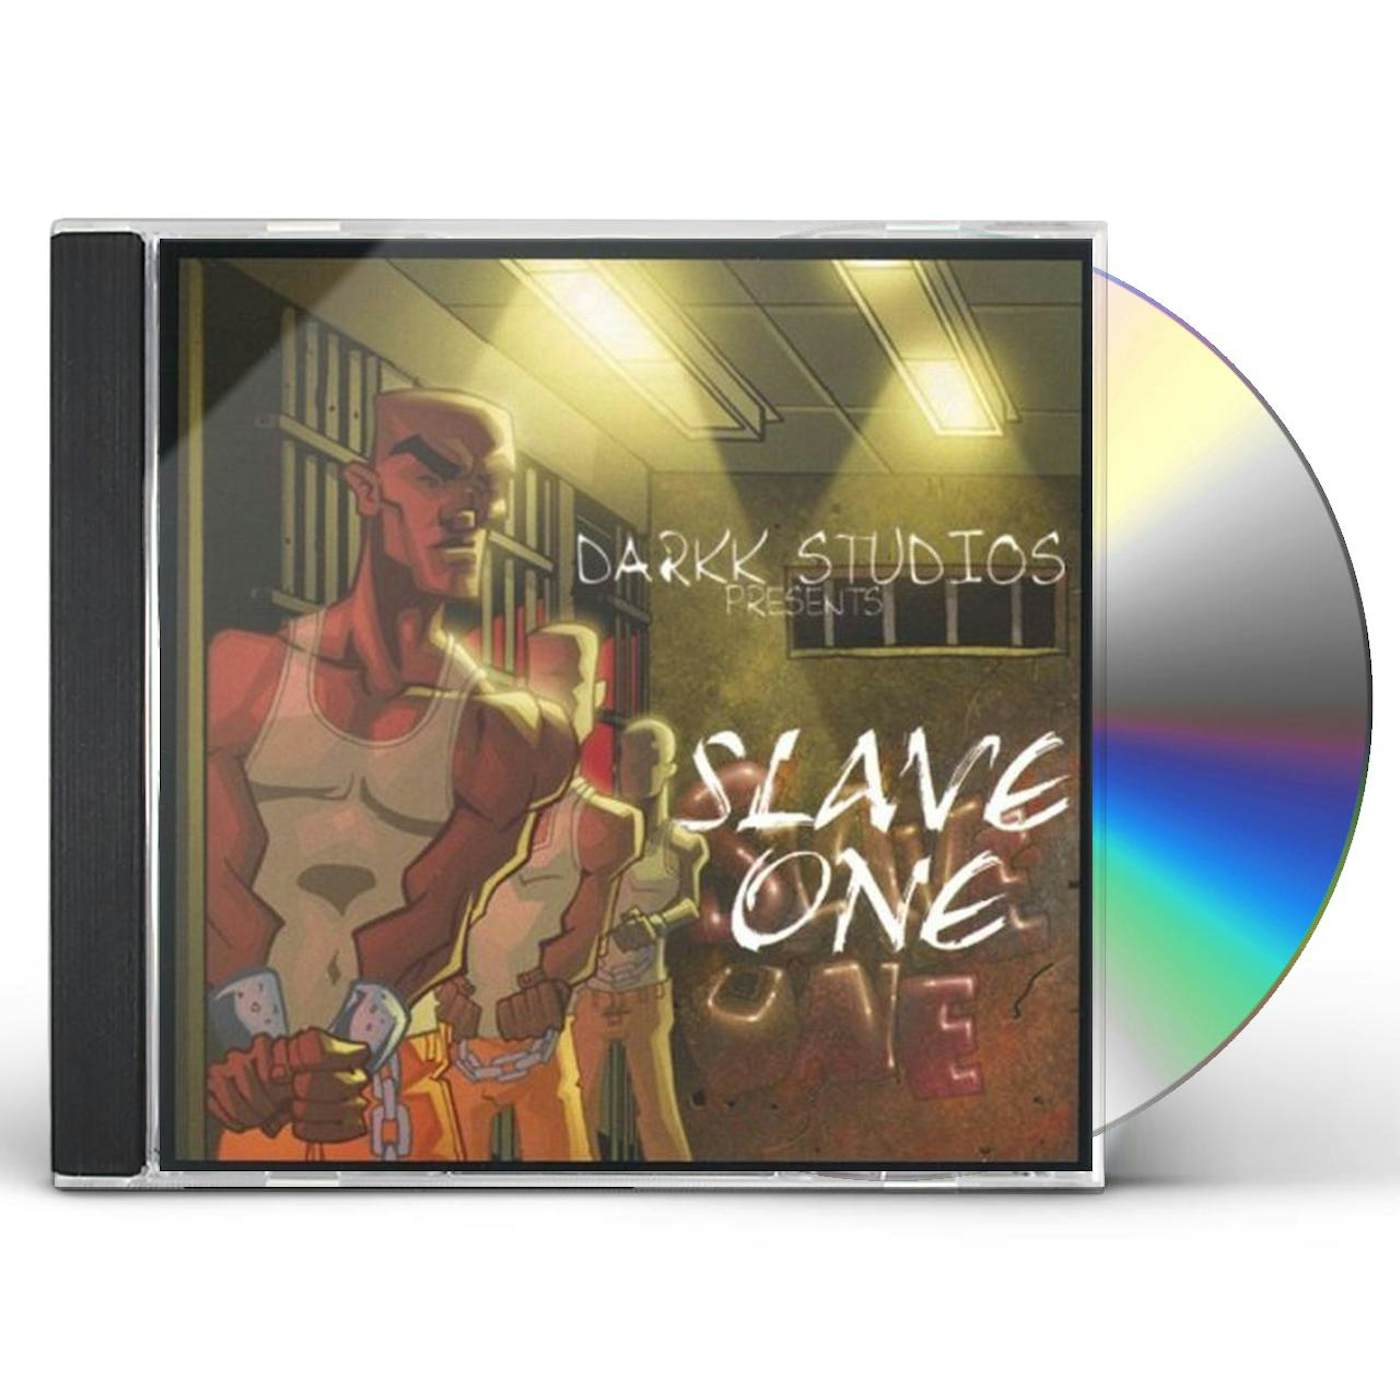 James DARKK STUDIOS PRESENTS SLAVE ONE CD